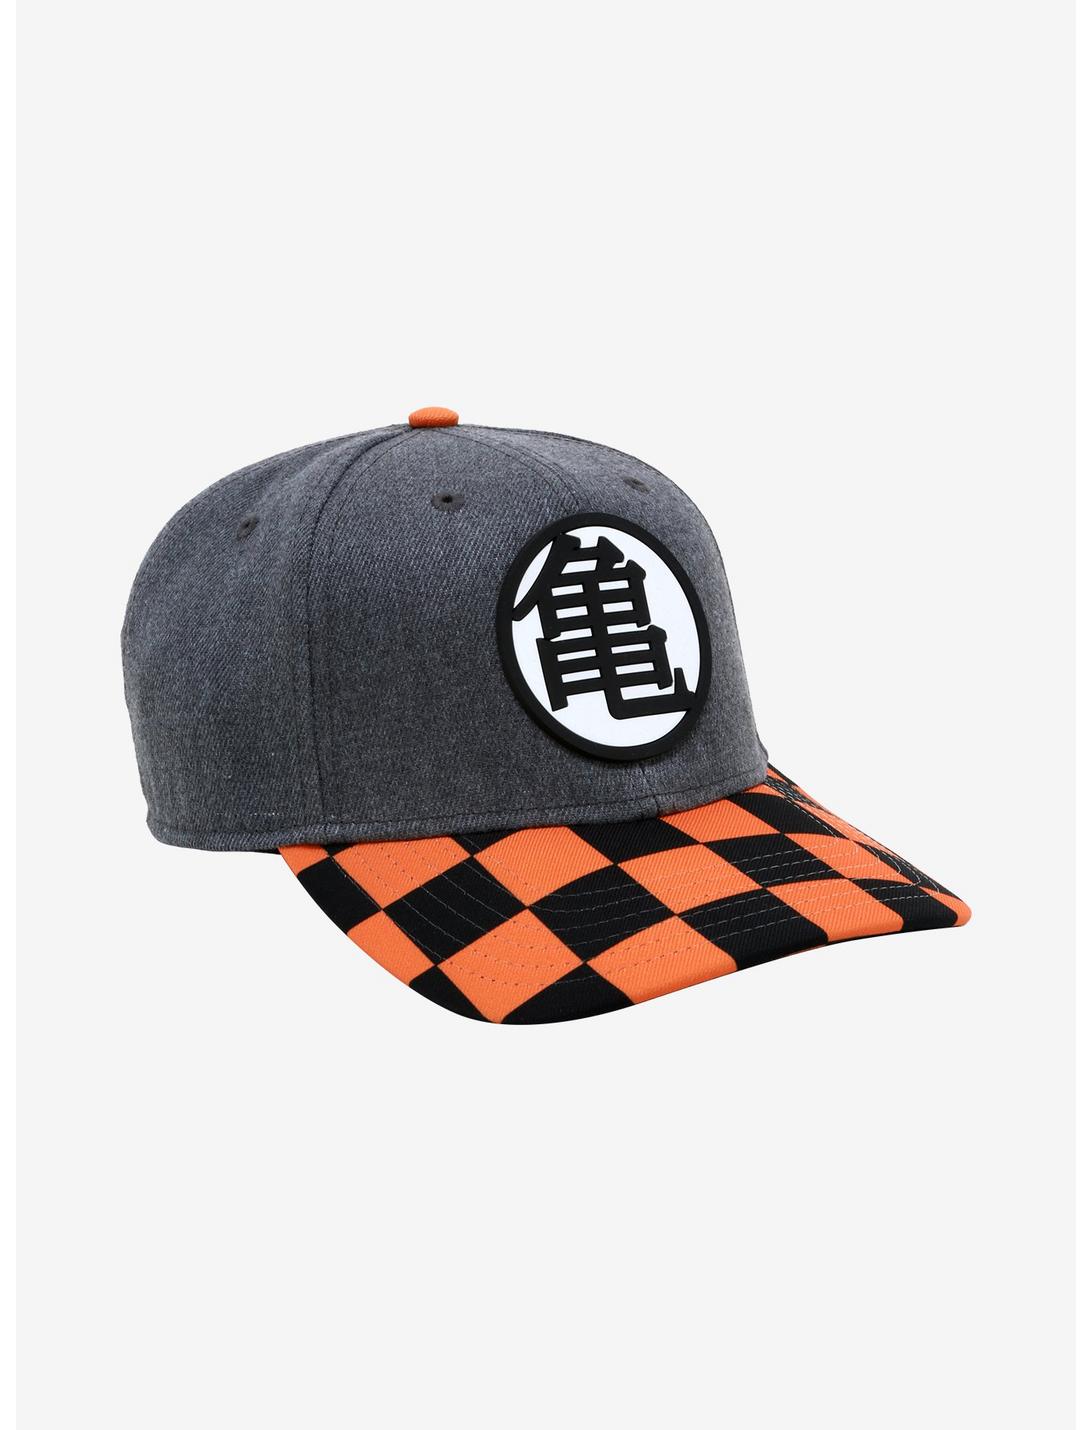 Dragon Ball Z Master Roshi Kanji Checkered Curved Snapback Hat, , hi-res